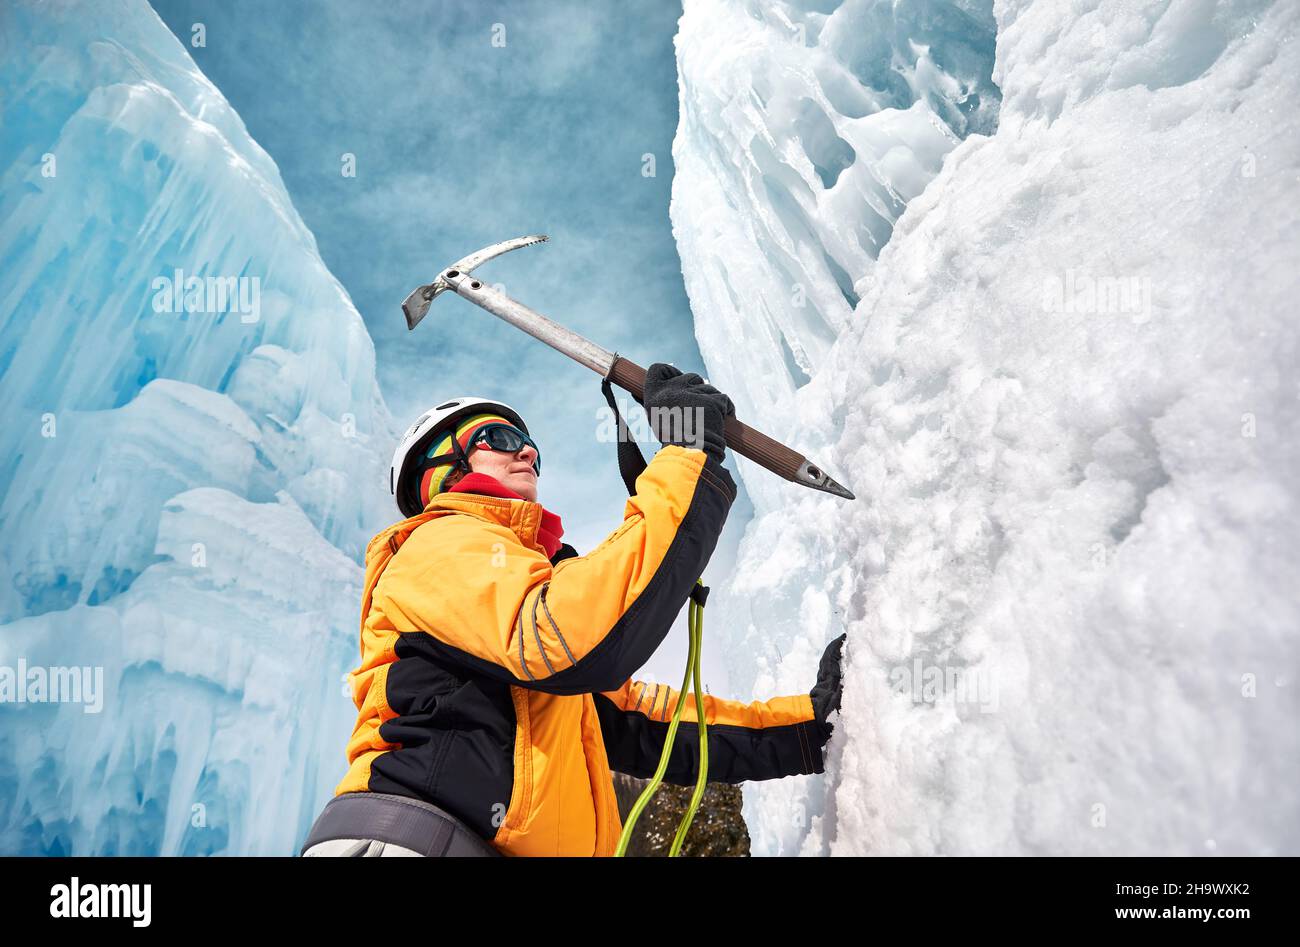 Die Frau klettert in den Bergen mit Eispickel in orangefarbener Jacke über einen gefrorenen Wasserfall. Sportbergsteigen und Alpinismus Konzept. Stockfoto